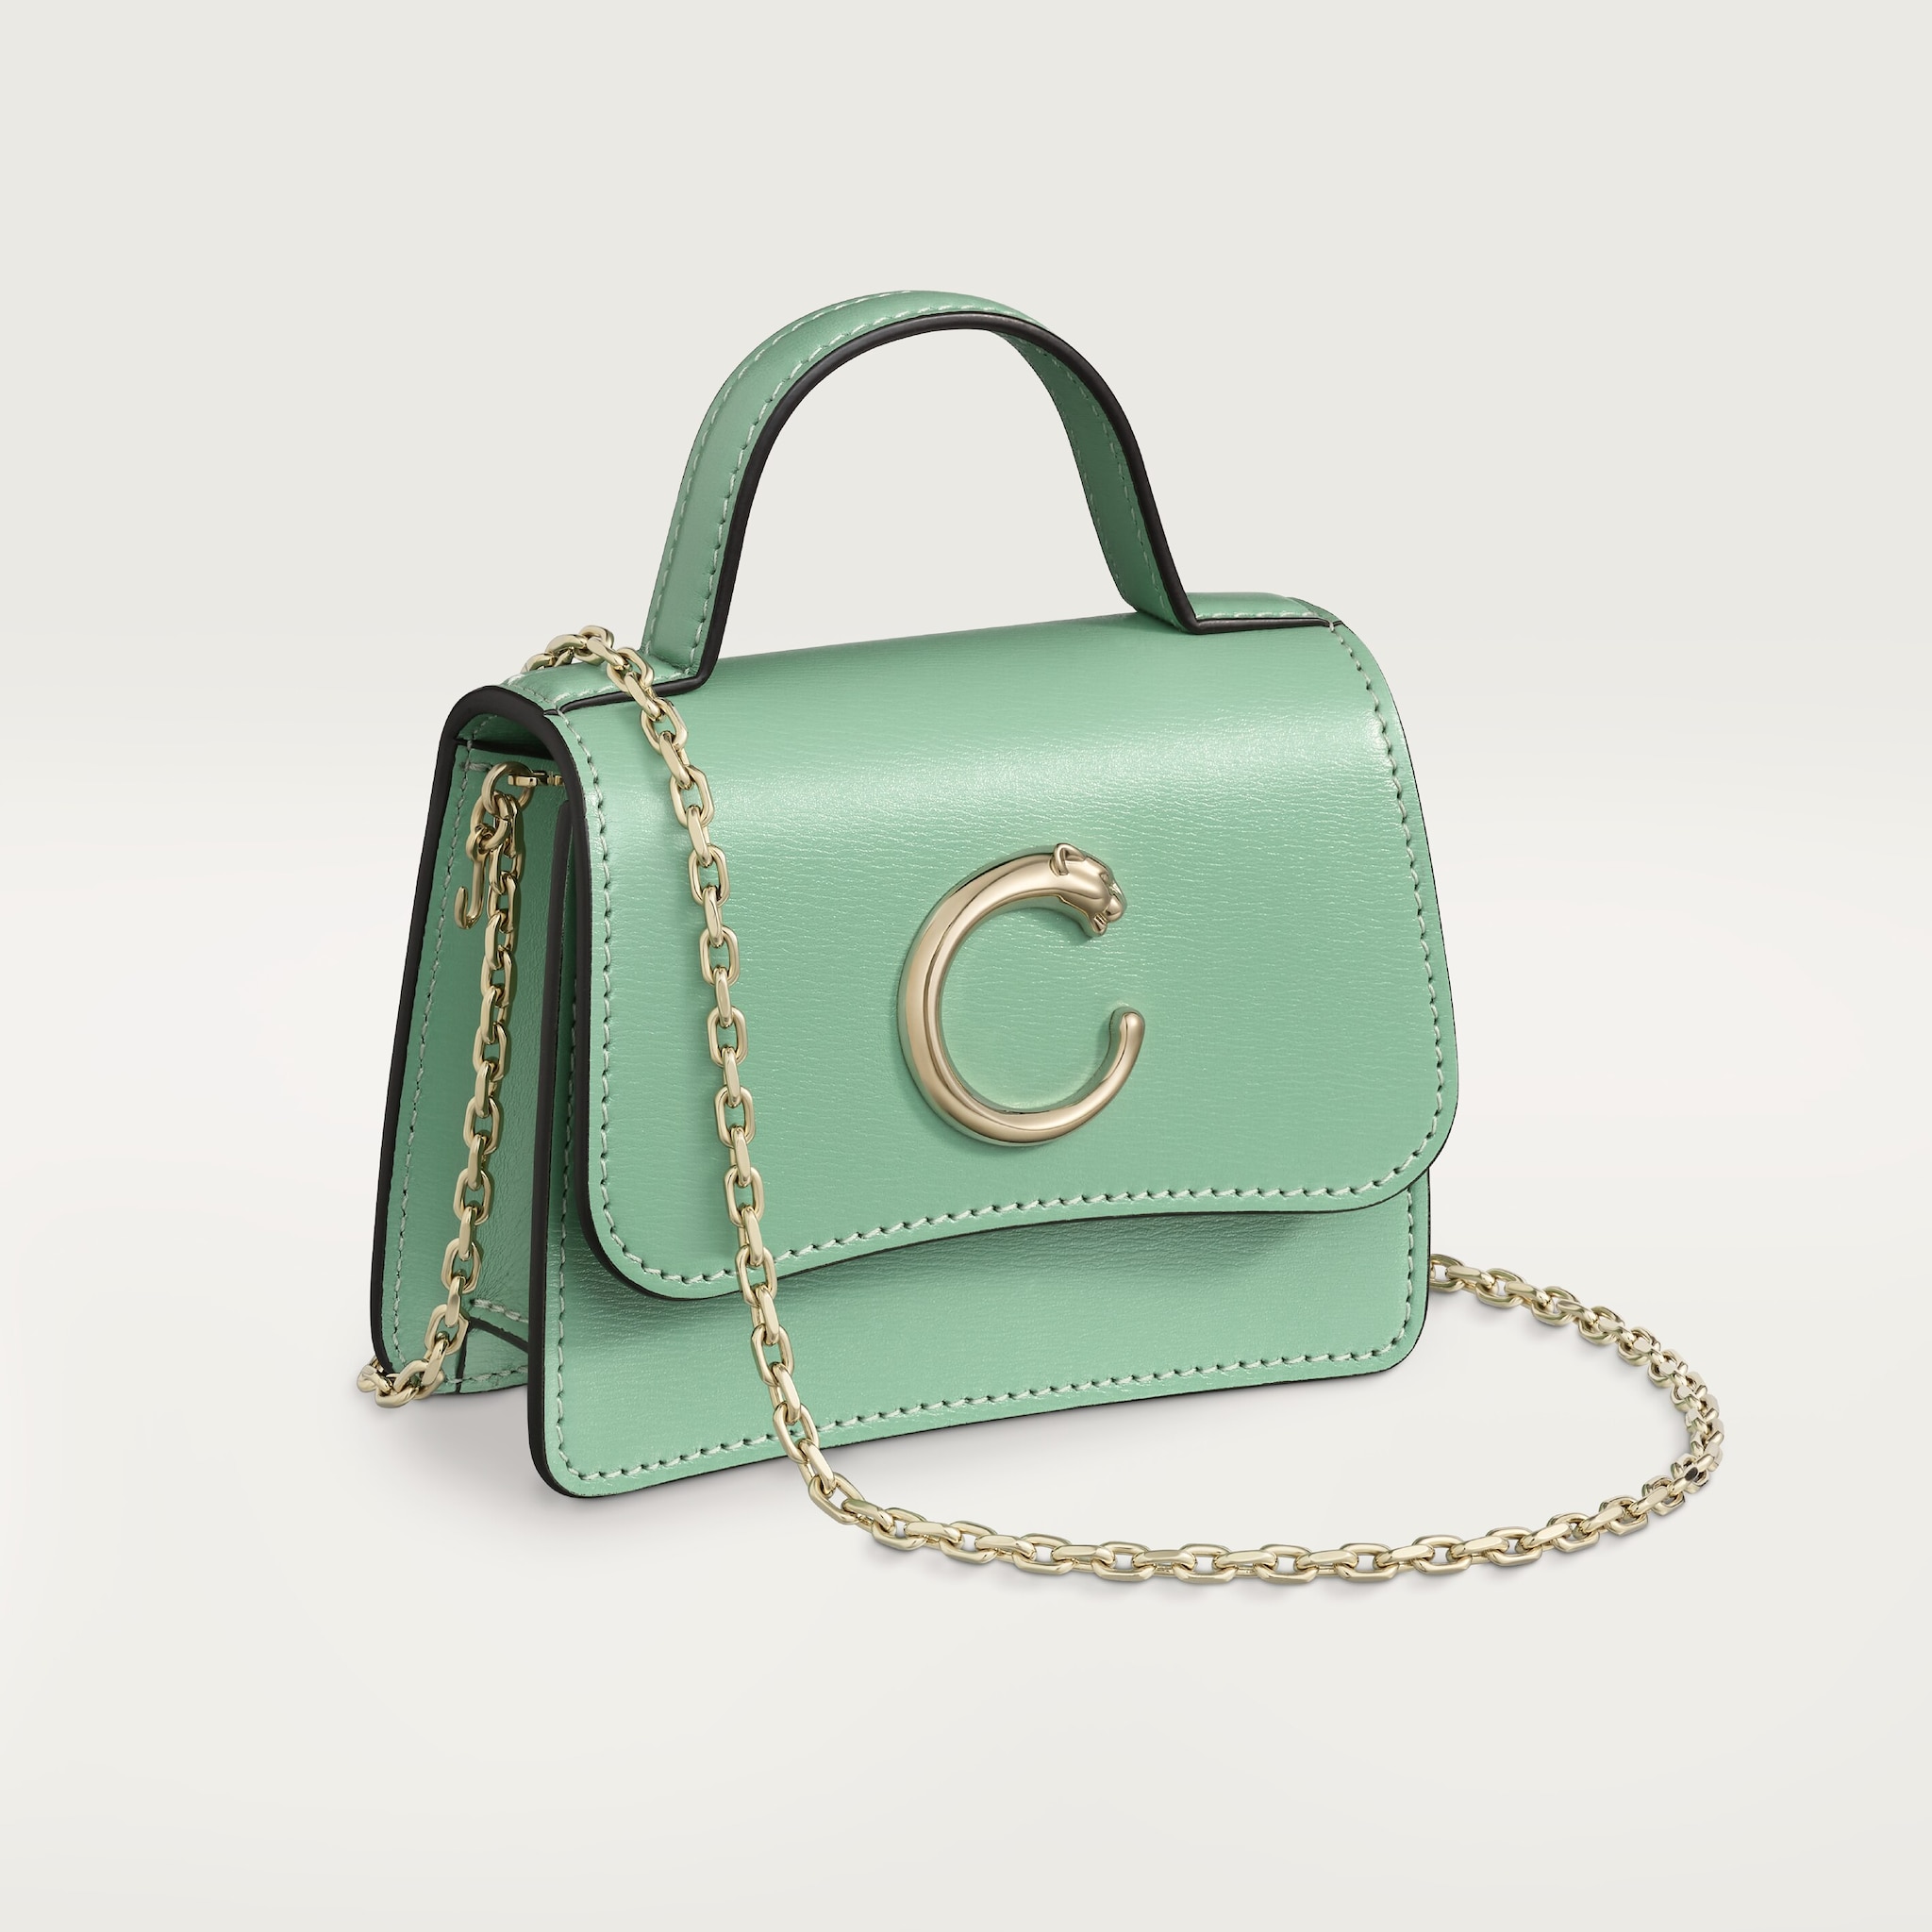 Chain bag micro model, Panthère de CartierSage green calfskin, golden finish